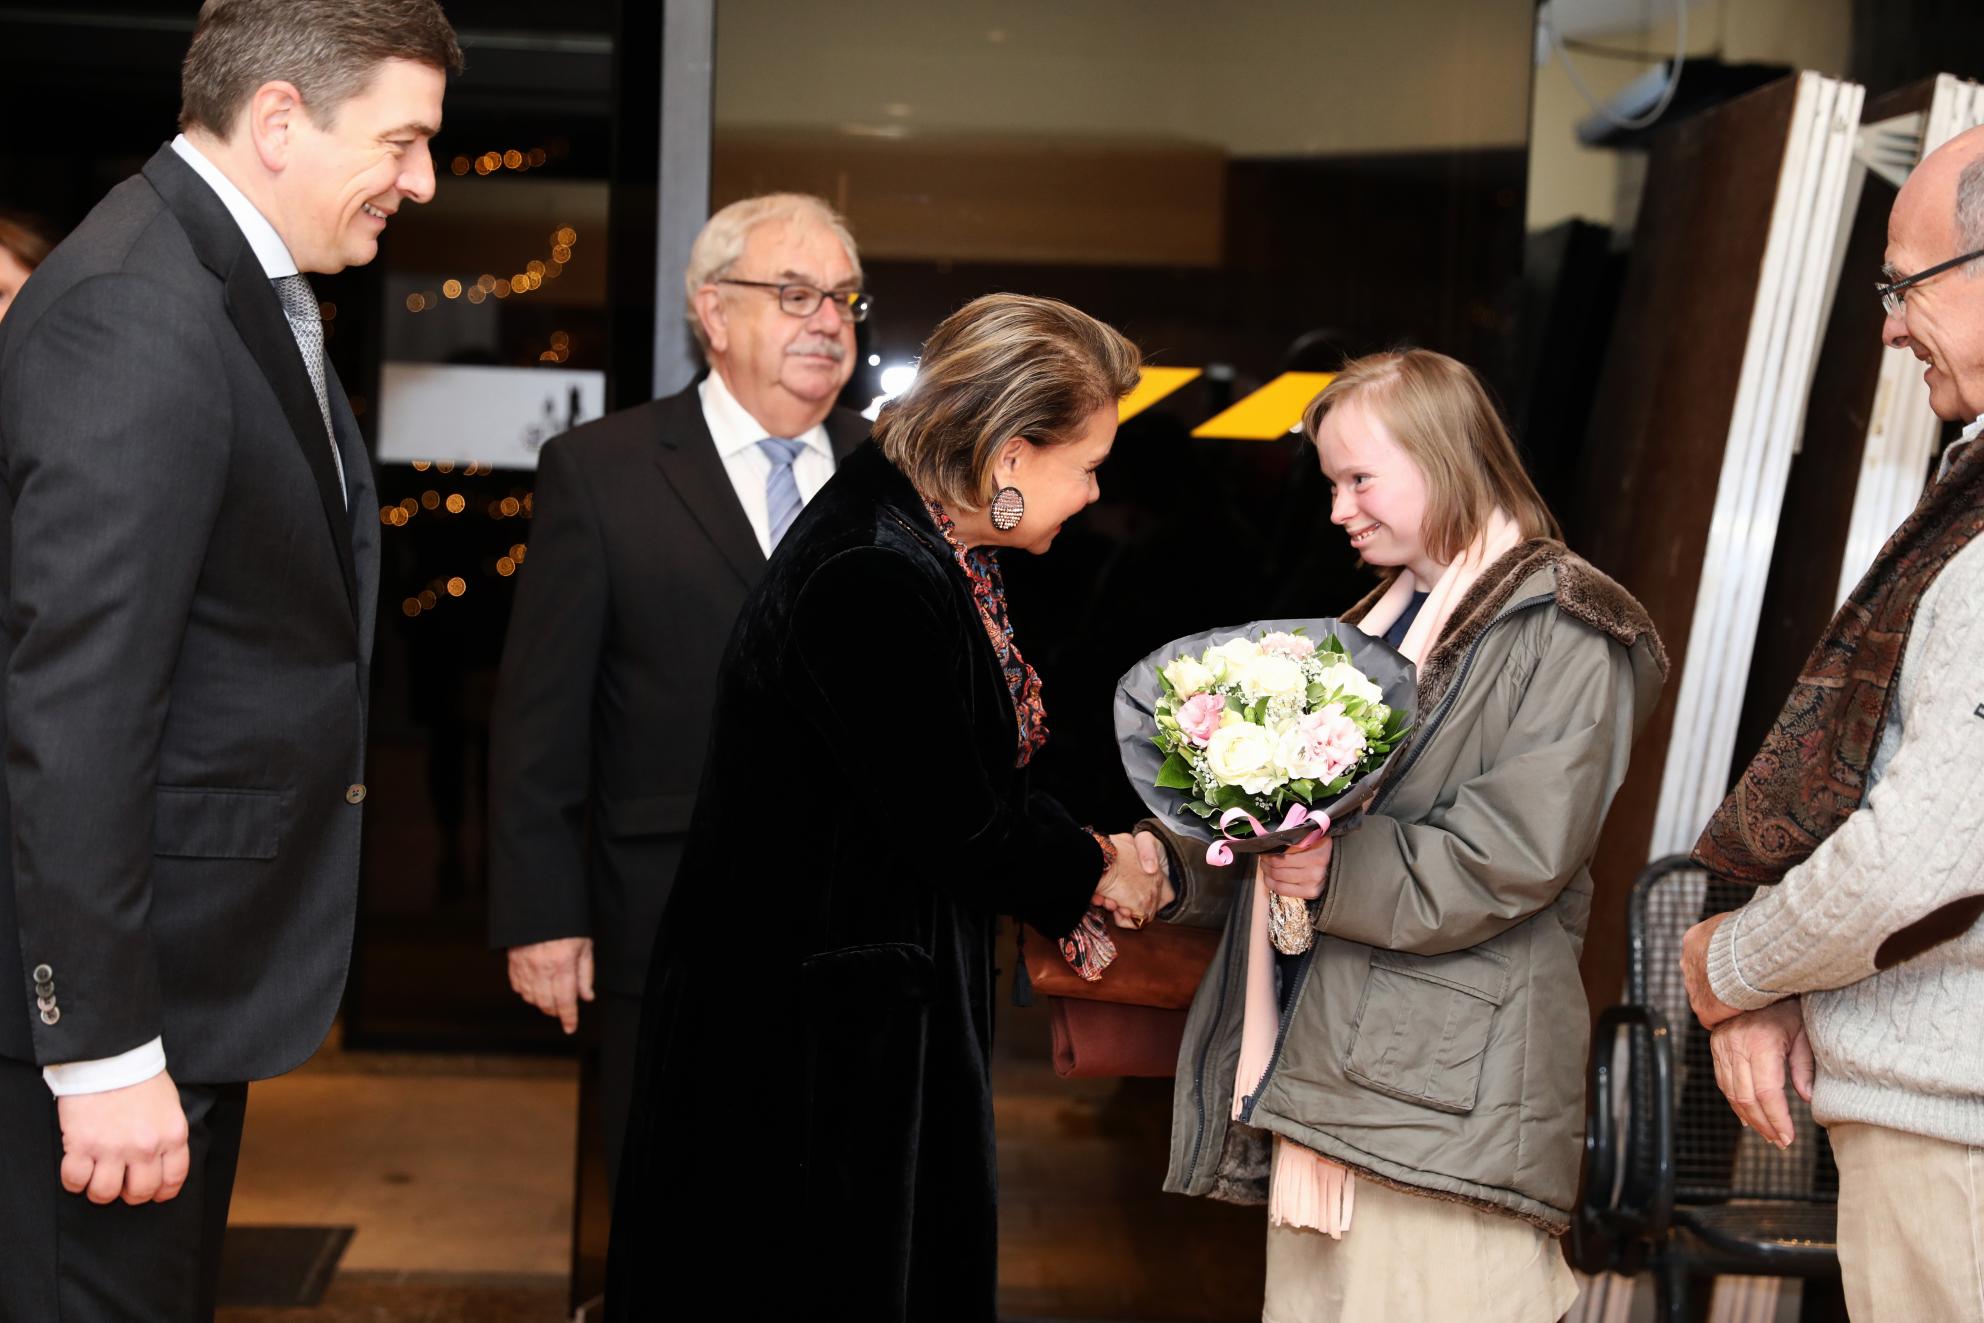 La Grande-Duchesse est accueillie au centre de loisirs de Niederanven, de g. à dr., par le président de l’Agence du Bénévolat, M. Marc Crochet, le bourgmestre de Niederanven, M. Raymond Weydert et par Mme Anouchka Roesgen (remise de fleurs)
